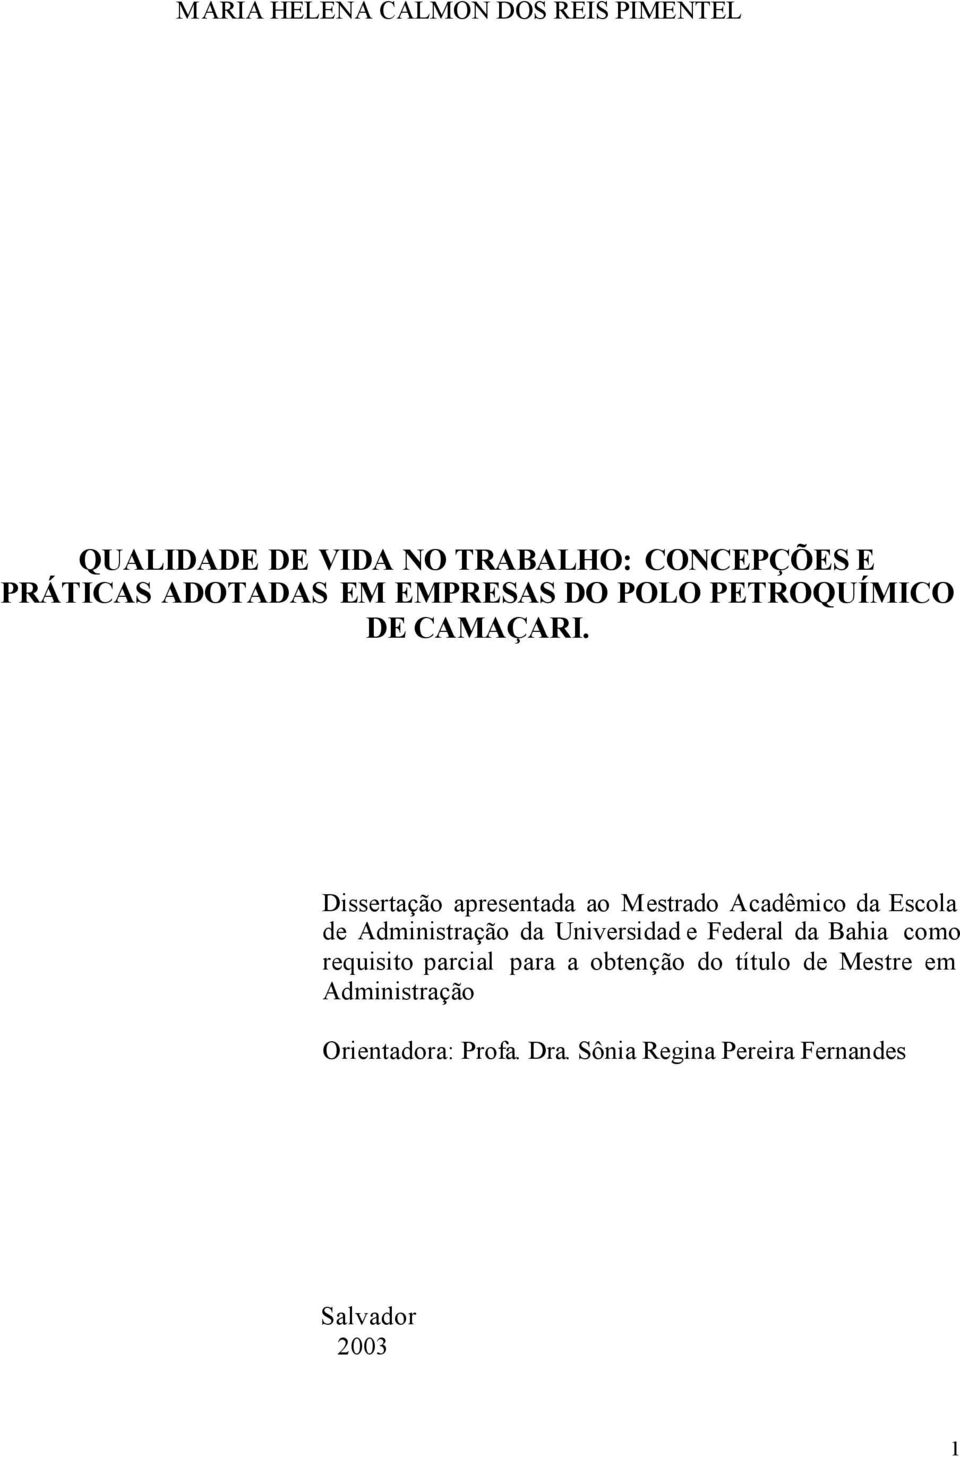 Dissertação apresentada ao Mestrado Acadêmico da Escola de Administração da Universidad e Federal